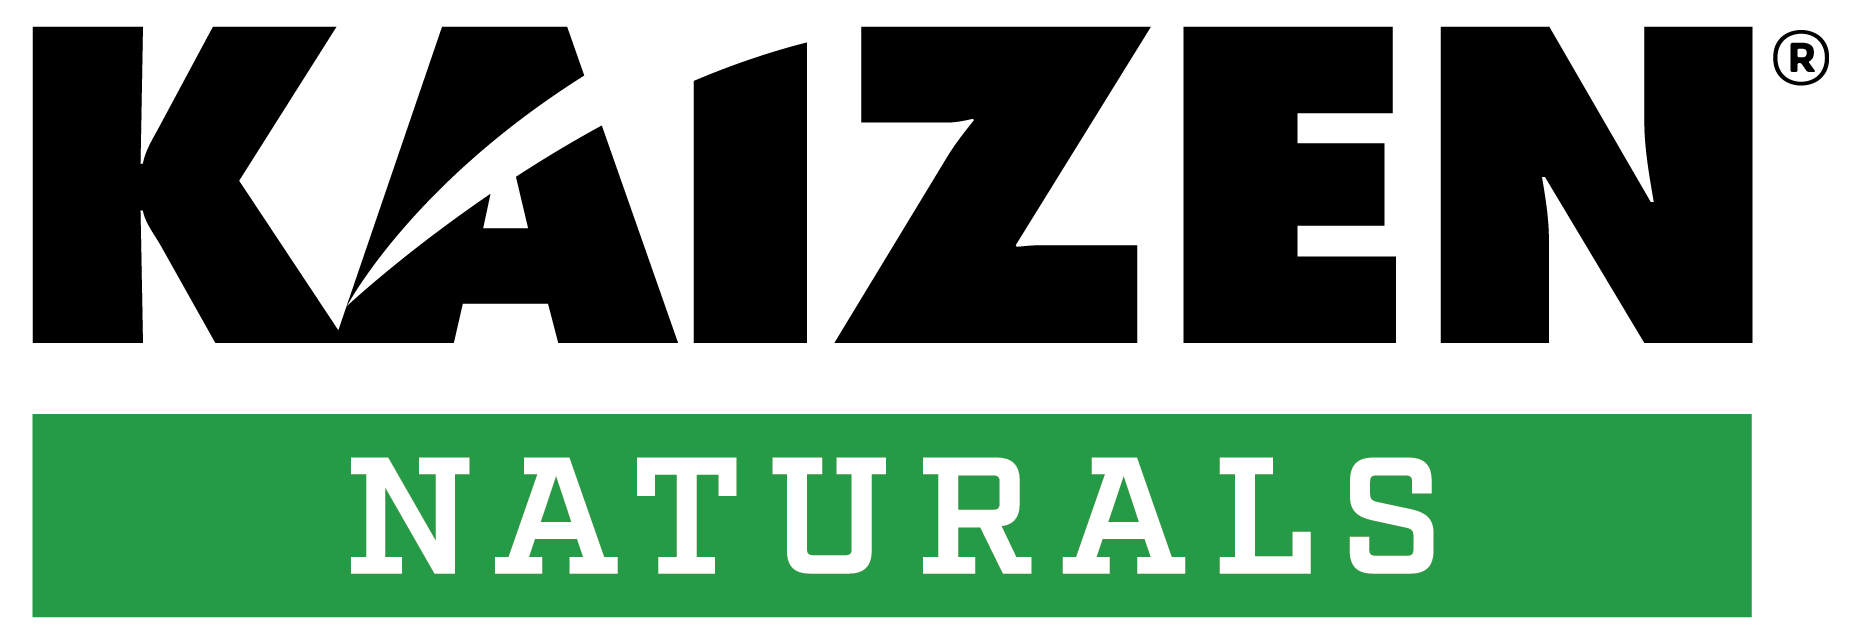 Kaizen naturals logo